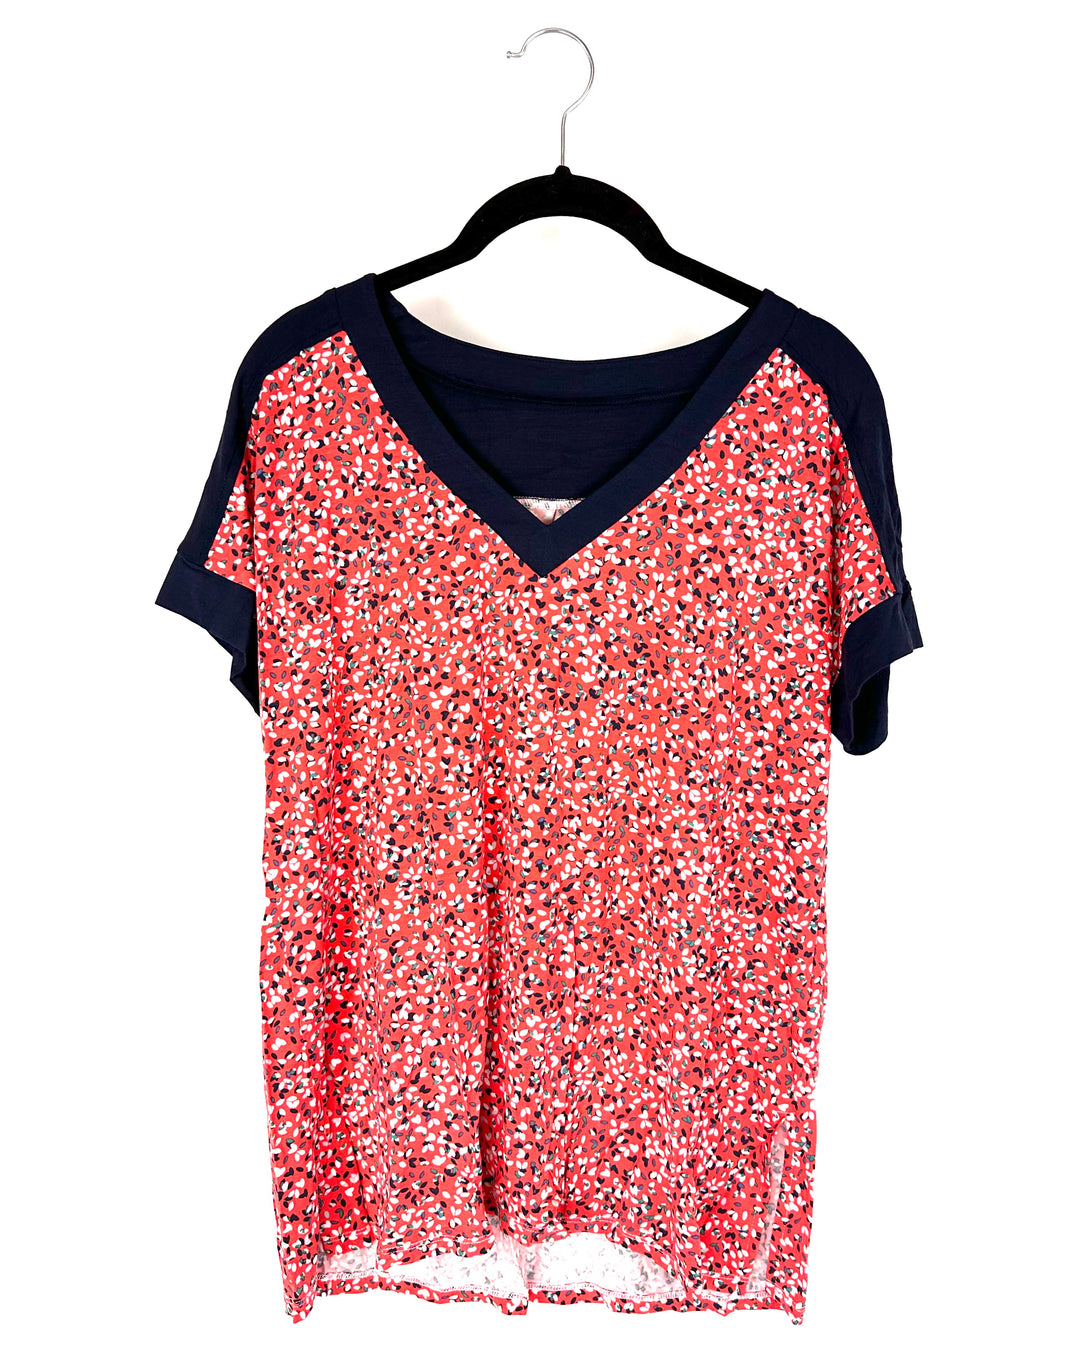 Coral Printed Pajama Shirt - Small